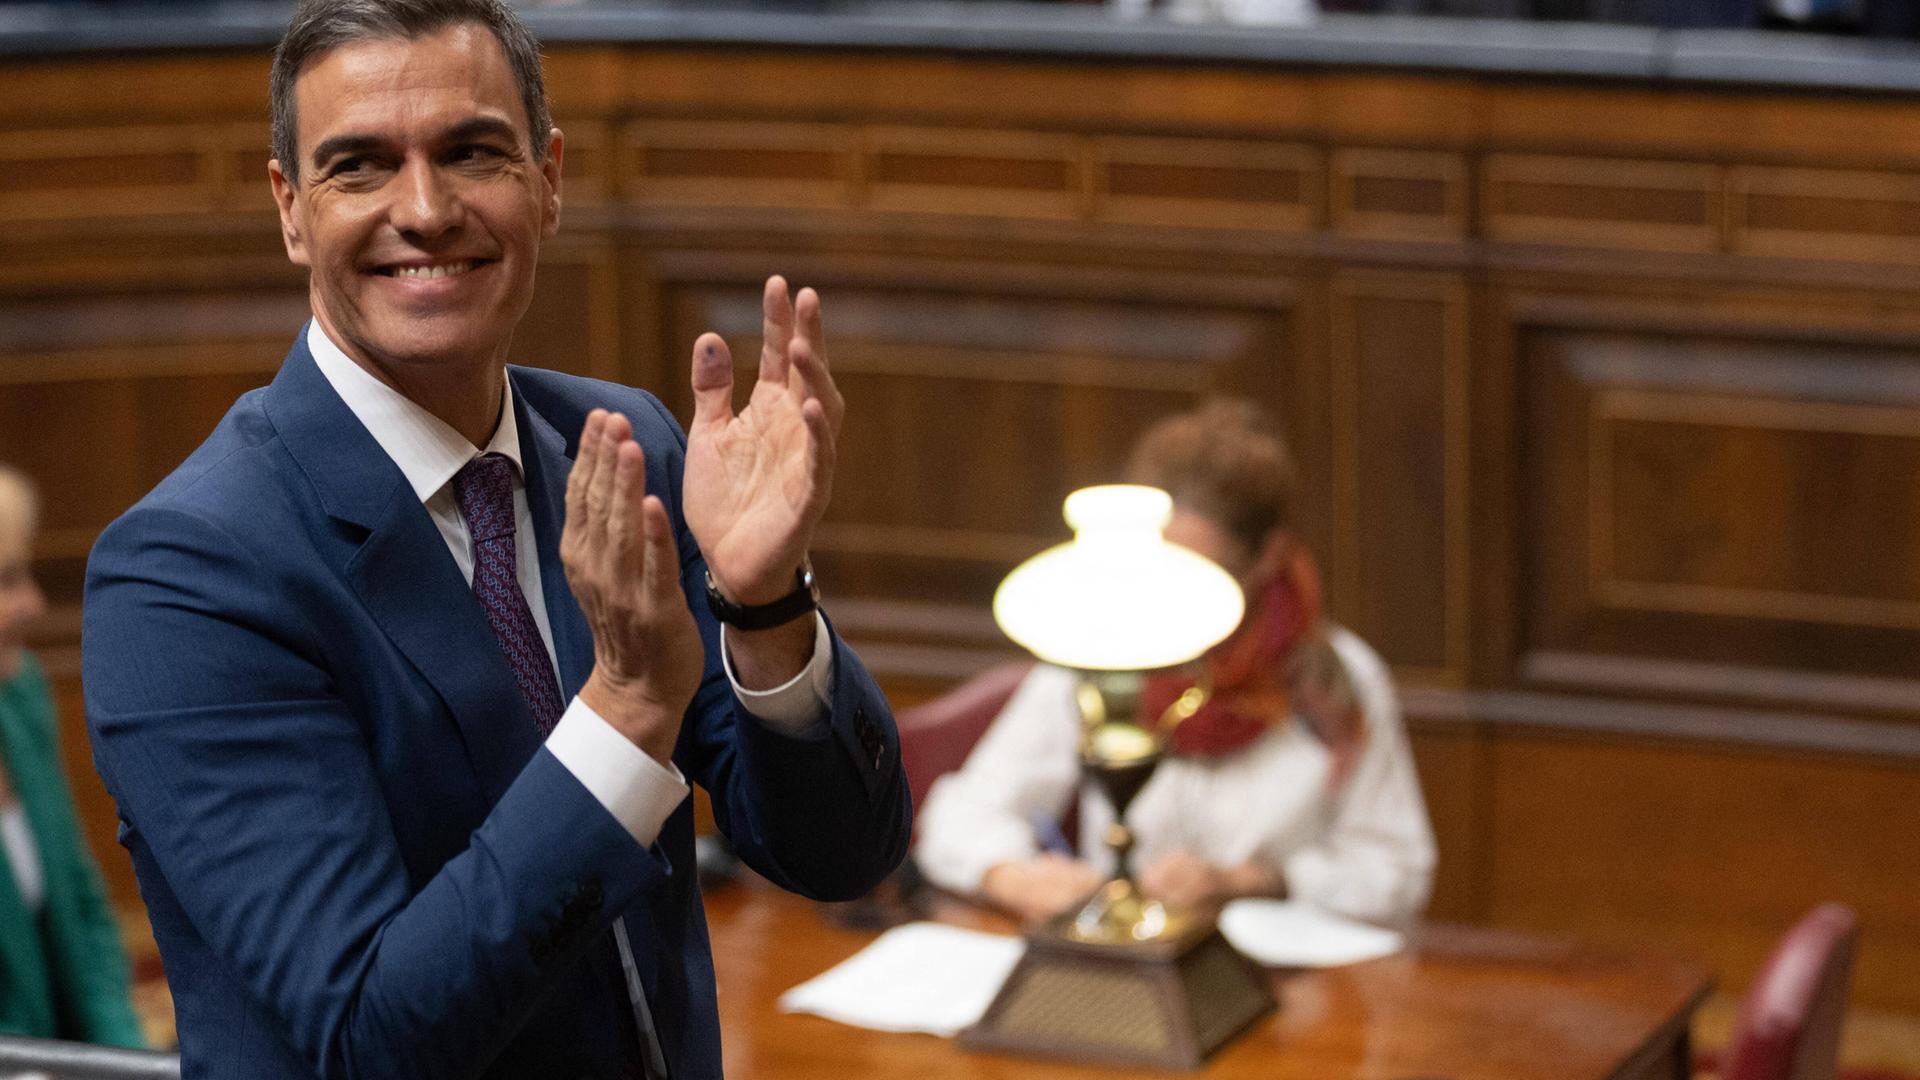 Pedro Sanchez im spanischen Parlament, er lächelt und klatscht in die Hände.